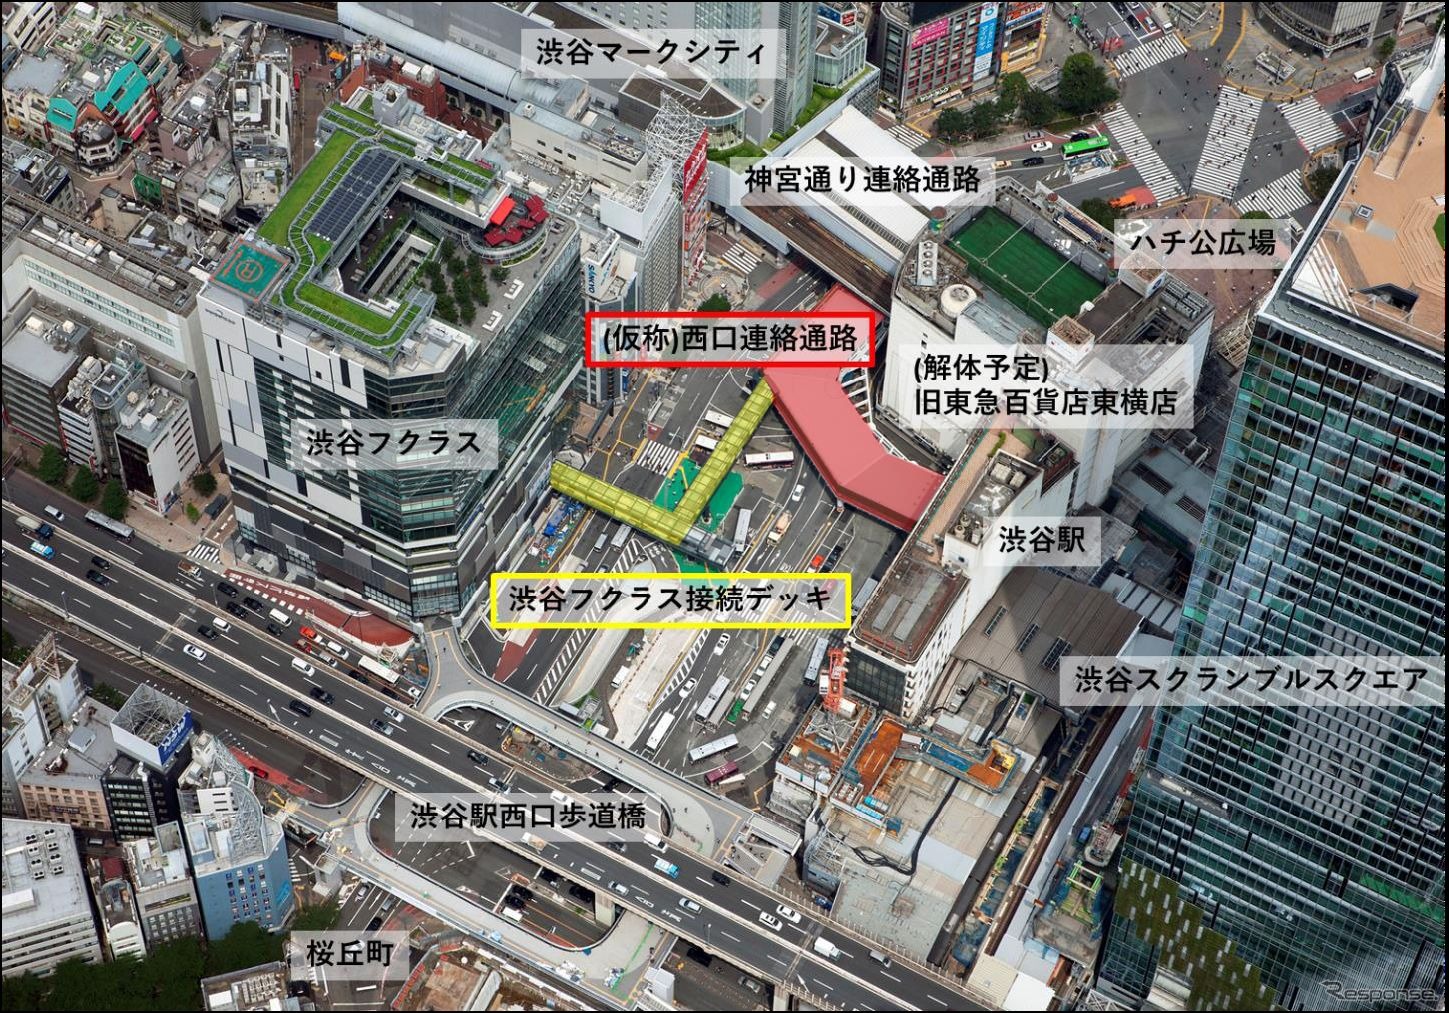 （仮称）西口連絡通路と渋谷フクラス接続デッキからなる歩行者デッキの全容。